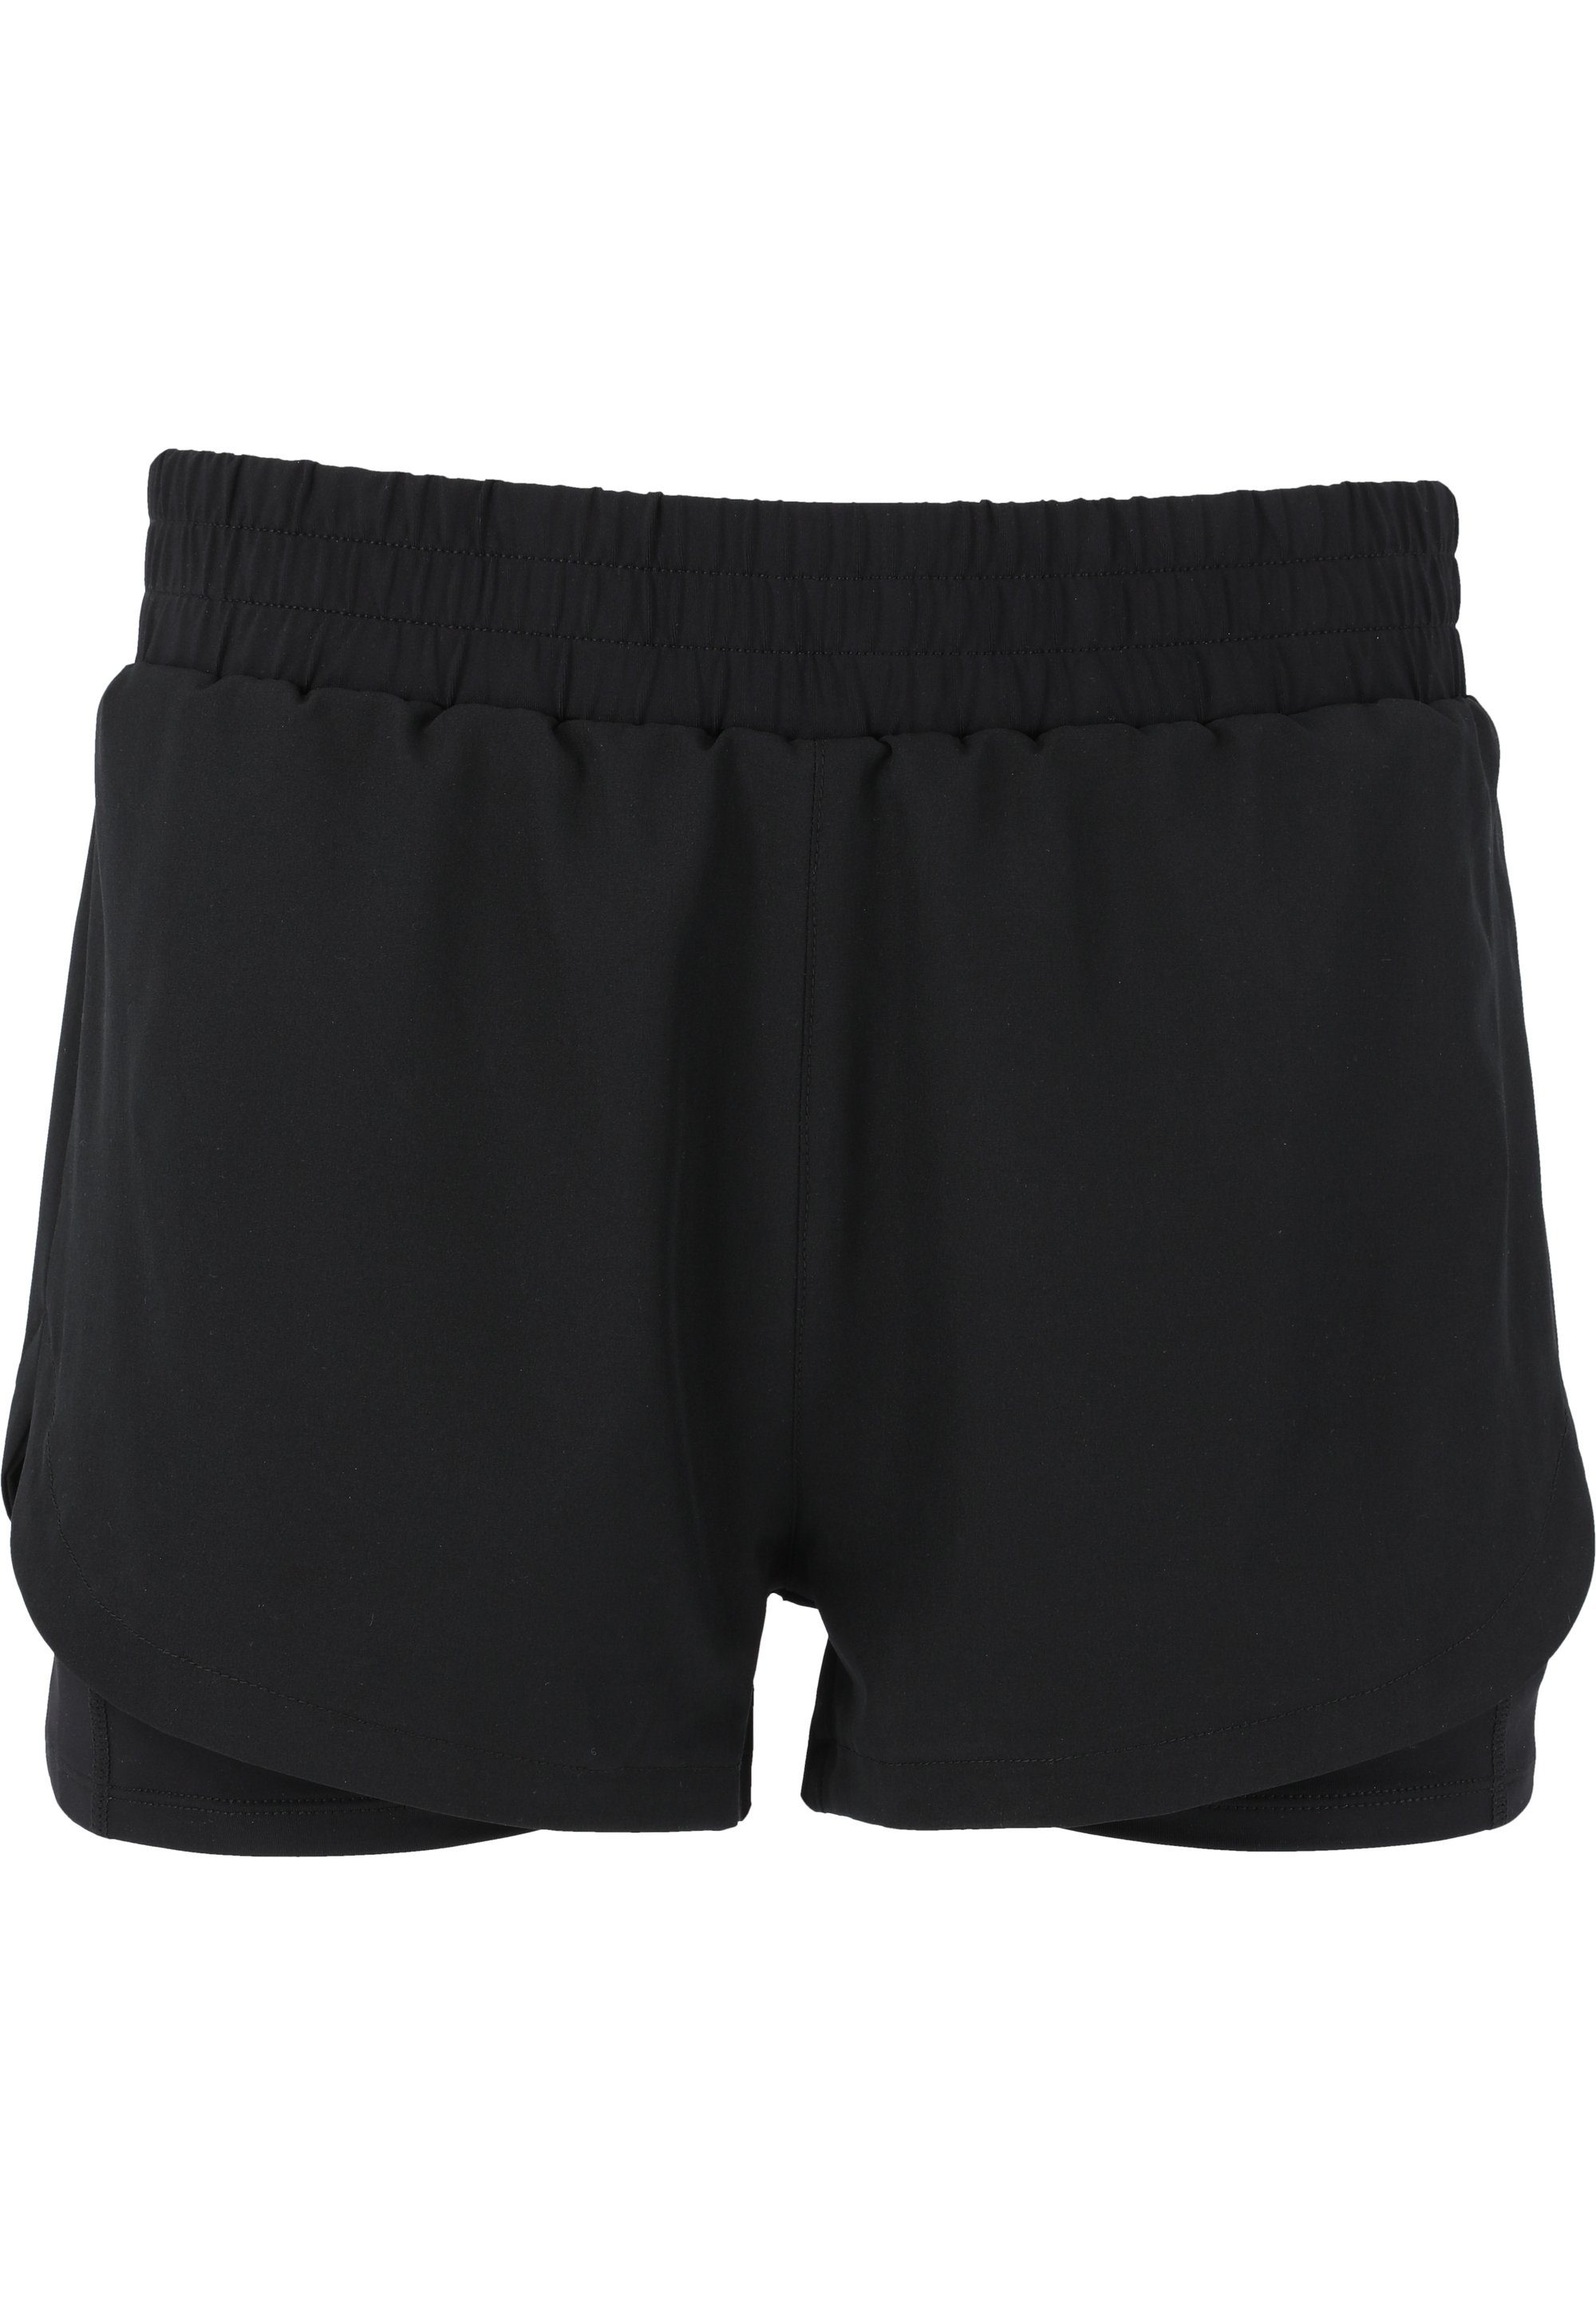 ENDURANCE praktischer schwarz Yarol Shorts 2-in-1-Funktion mit